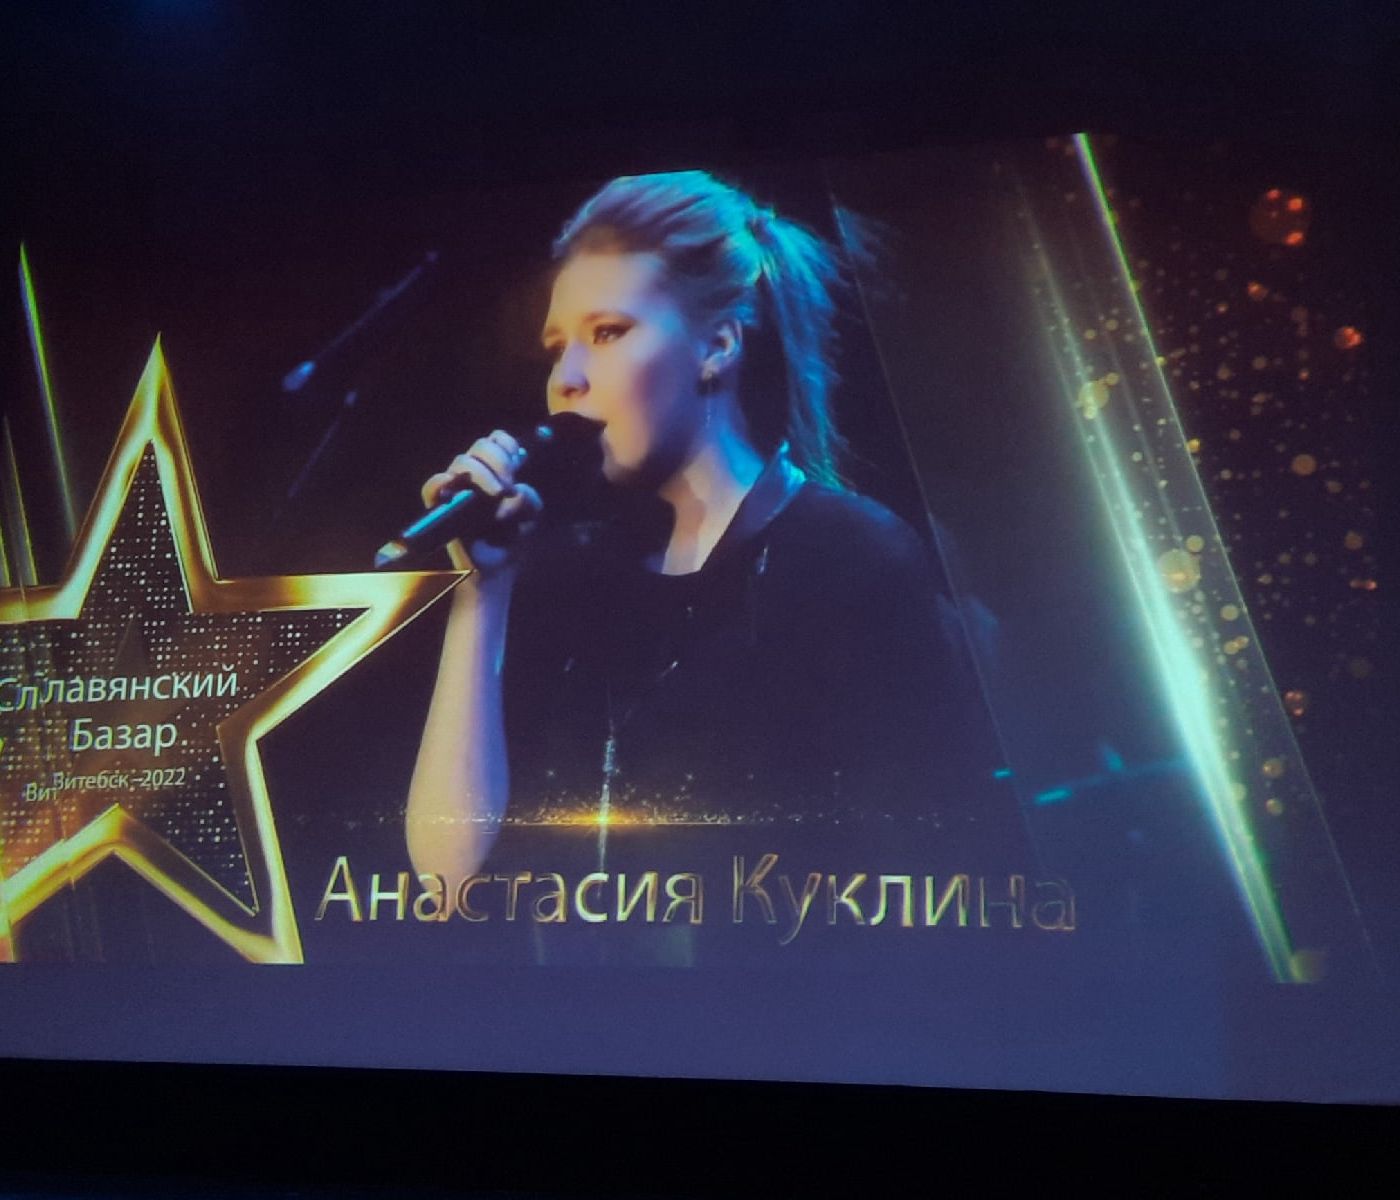 Псковская певица Анастасия Куклина вошла в десятку финалистов Национального отборочного прослушивания фестиваля «Славянский базар»